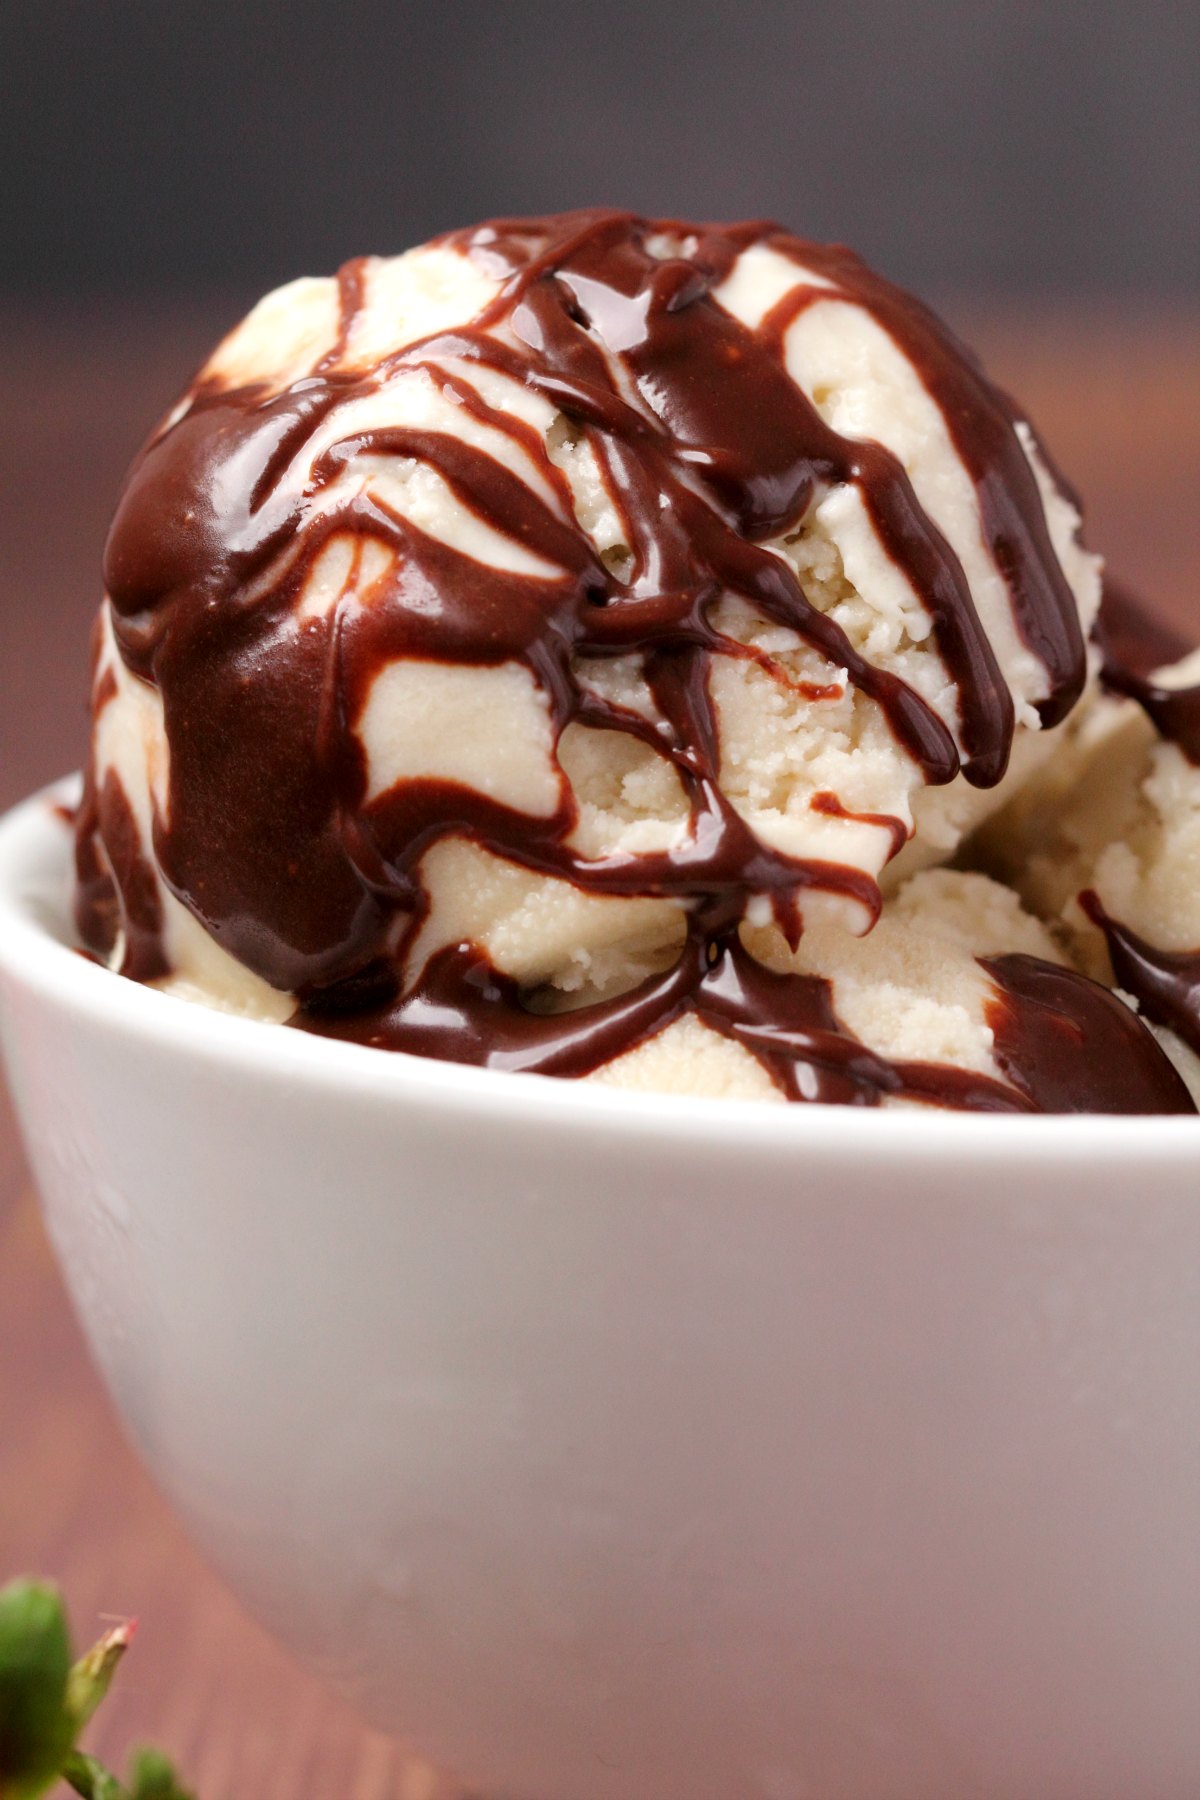  Øser iskrem toppet med sjokoladesaus i en hvit bolle. 